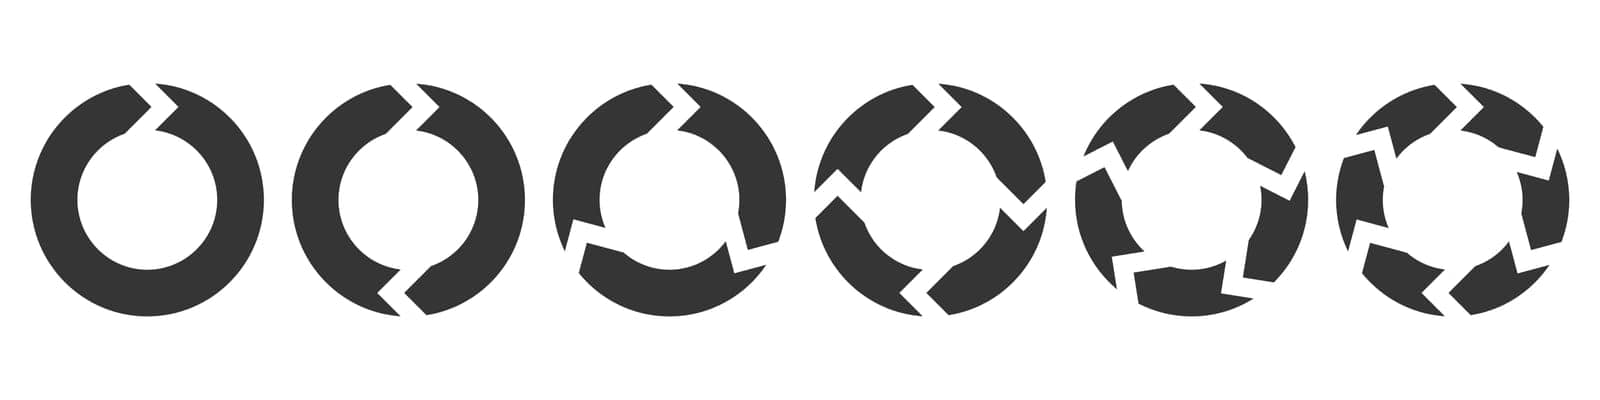 Set of circle arrows by Chekman